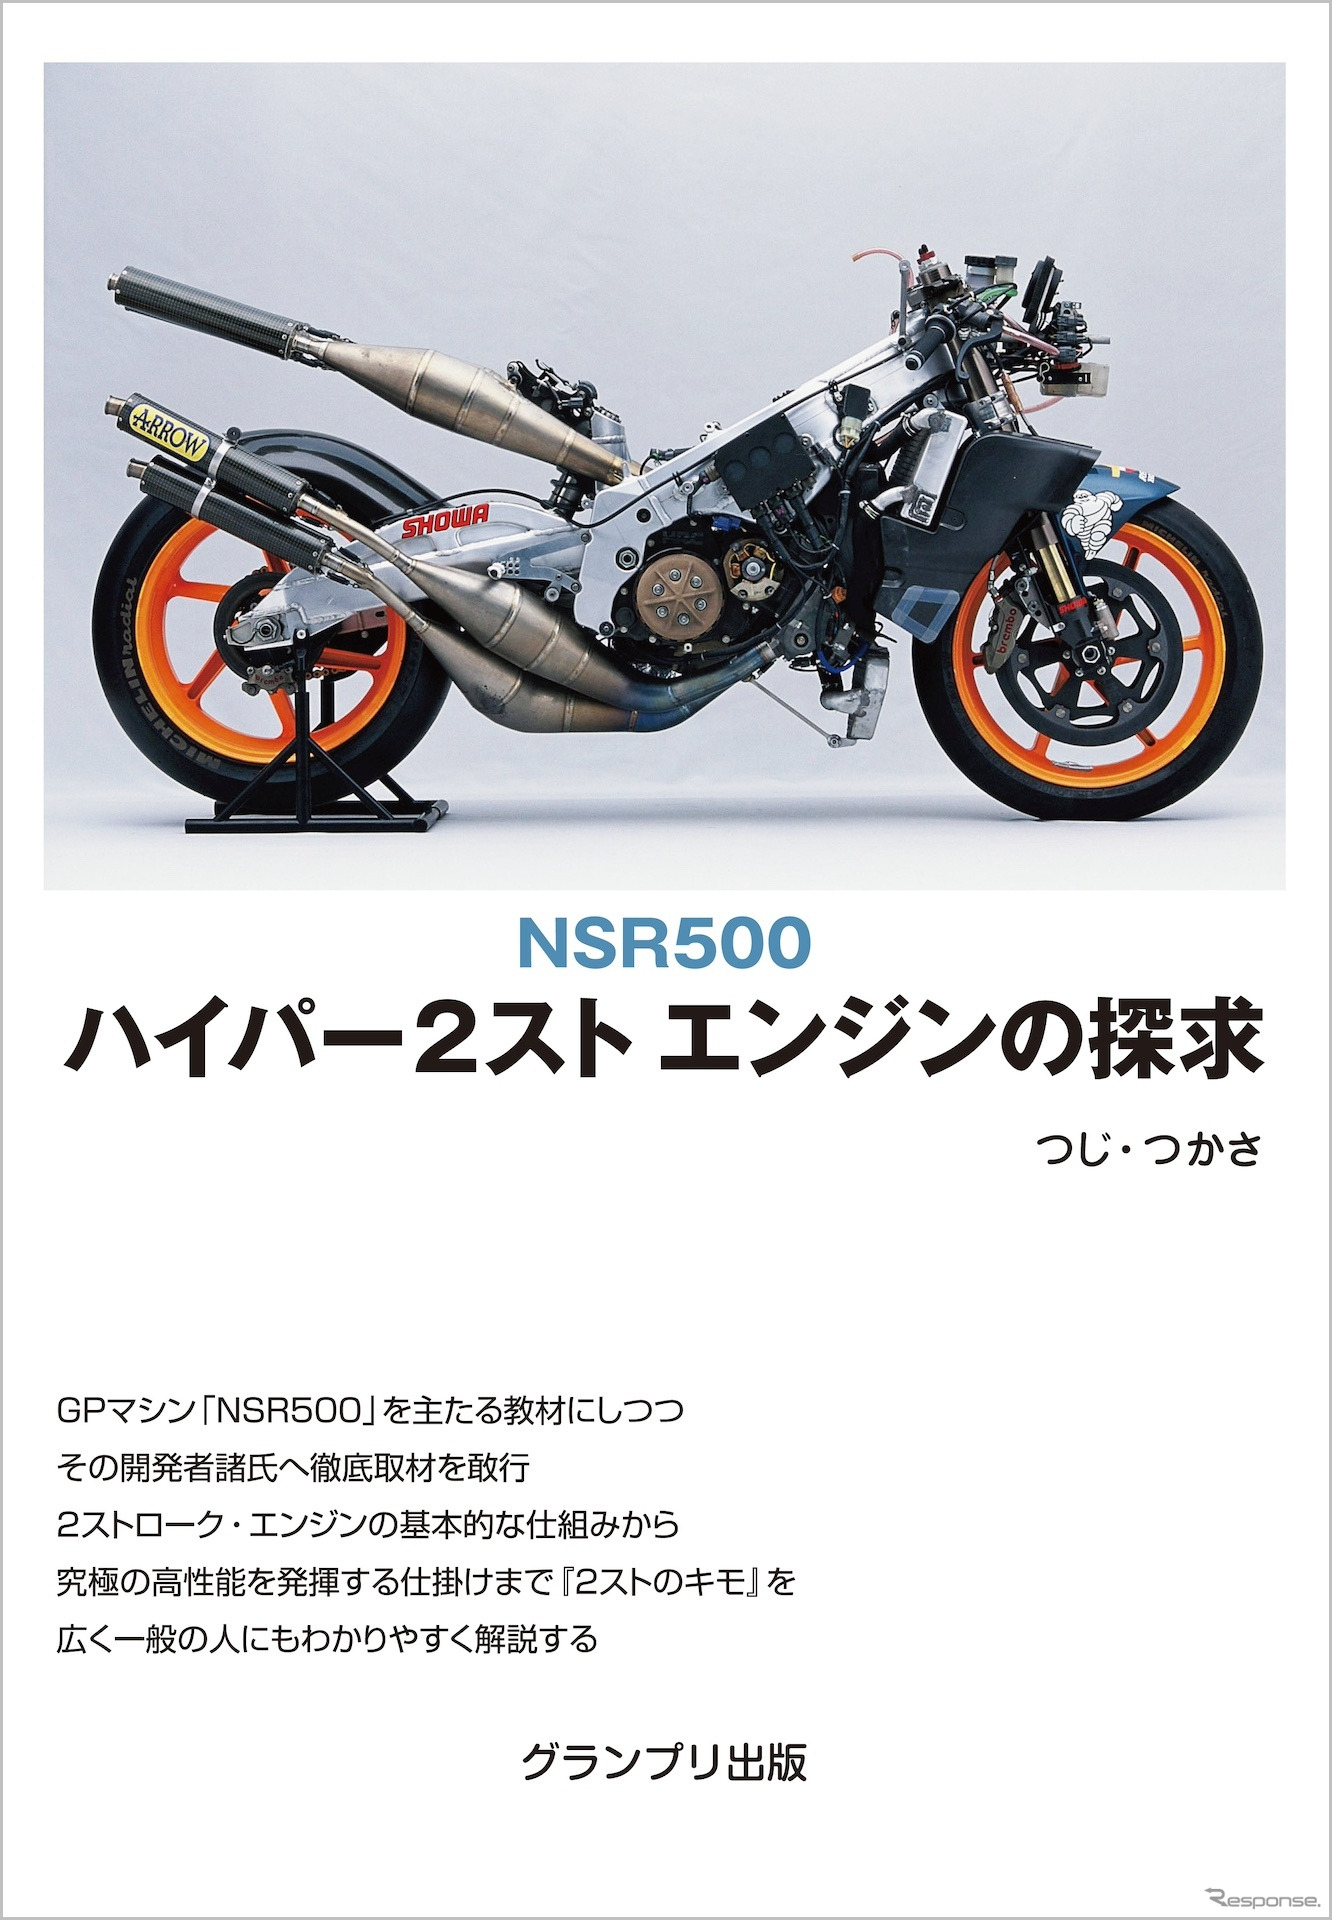 『NSR500 ハイパー2スト エンジンの探求』